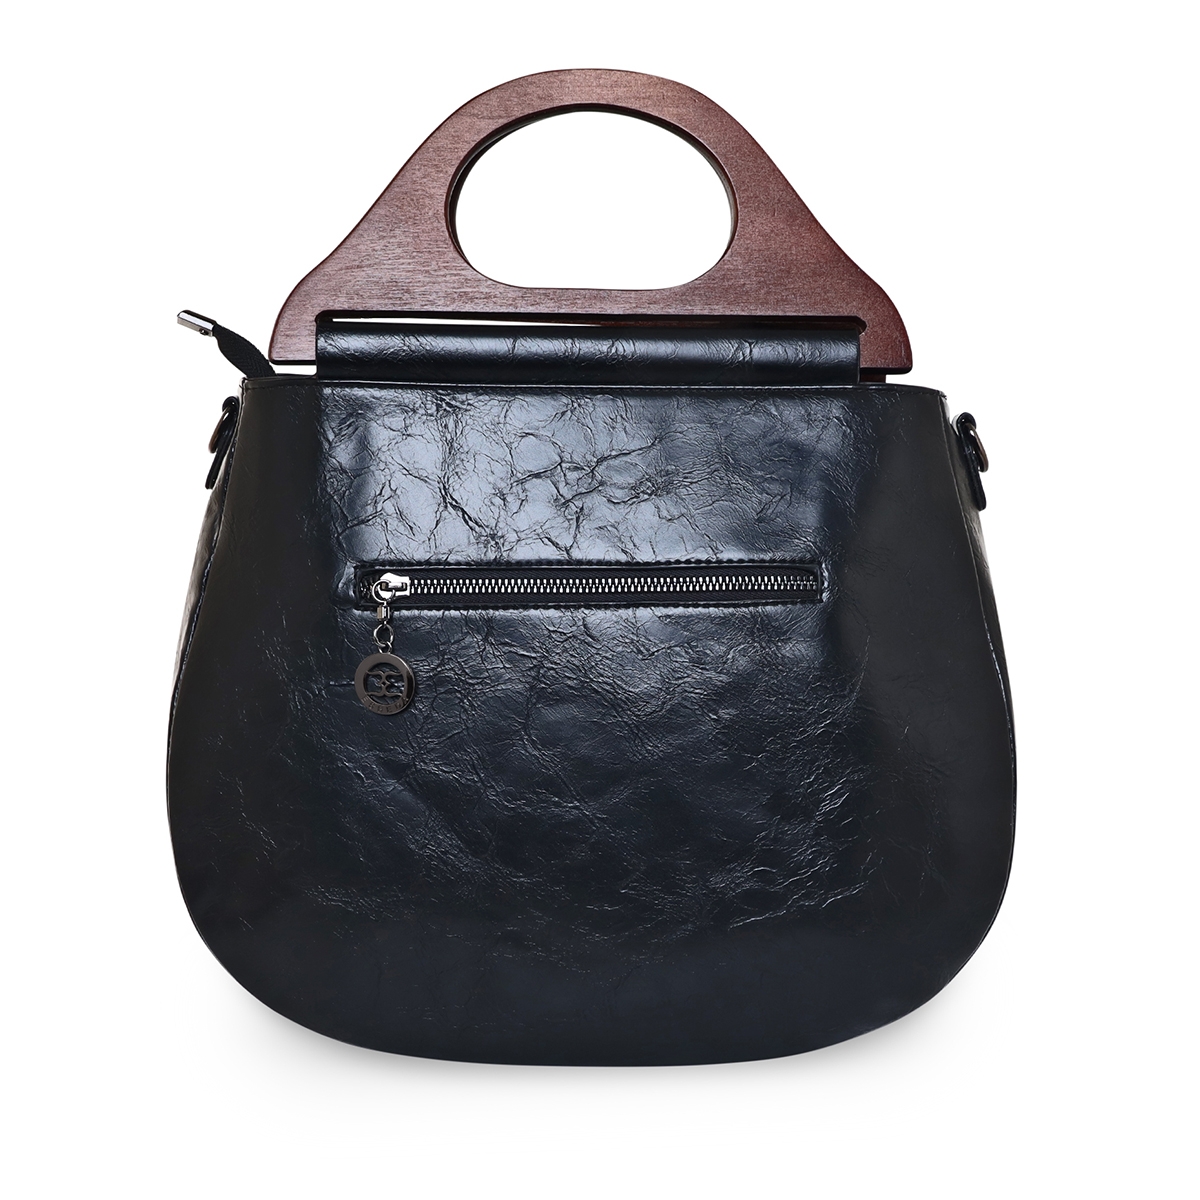 ESBEDA | ESBEDA Black Color Floral Embroidery Pattern Handbag for Women  2